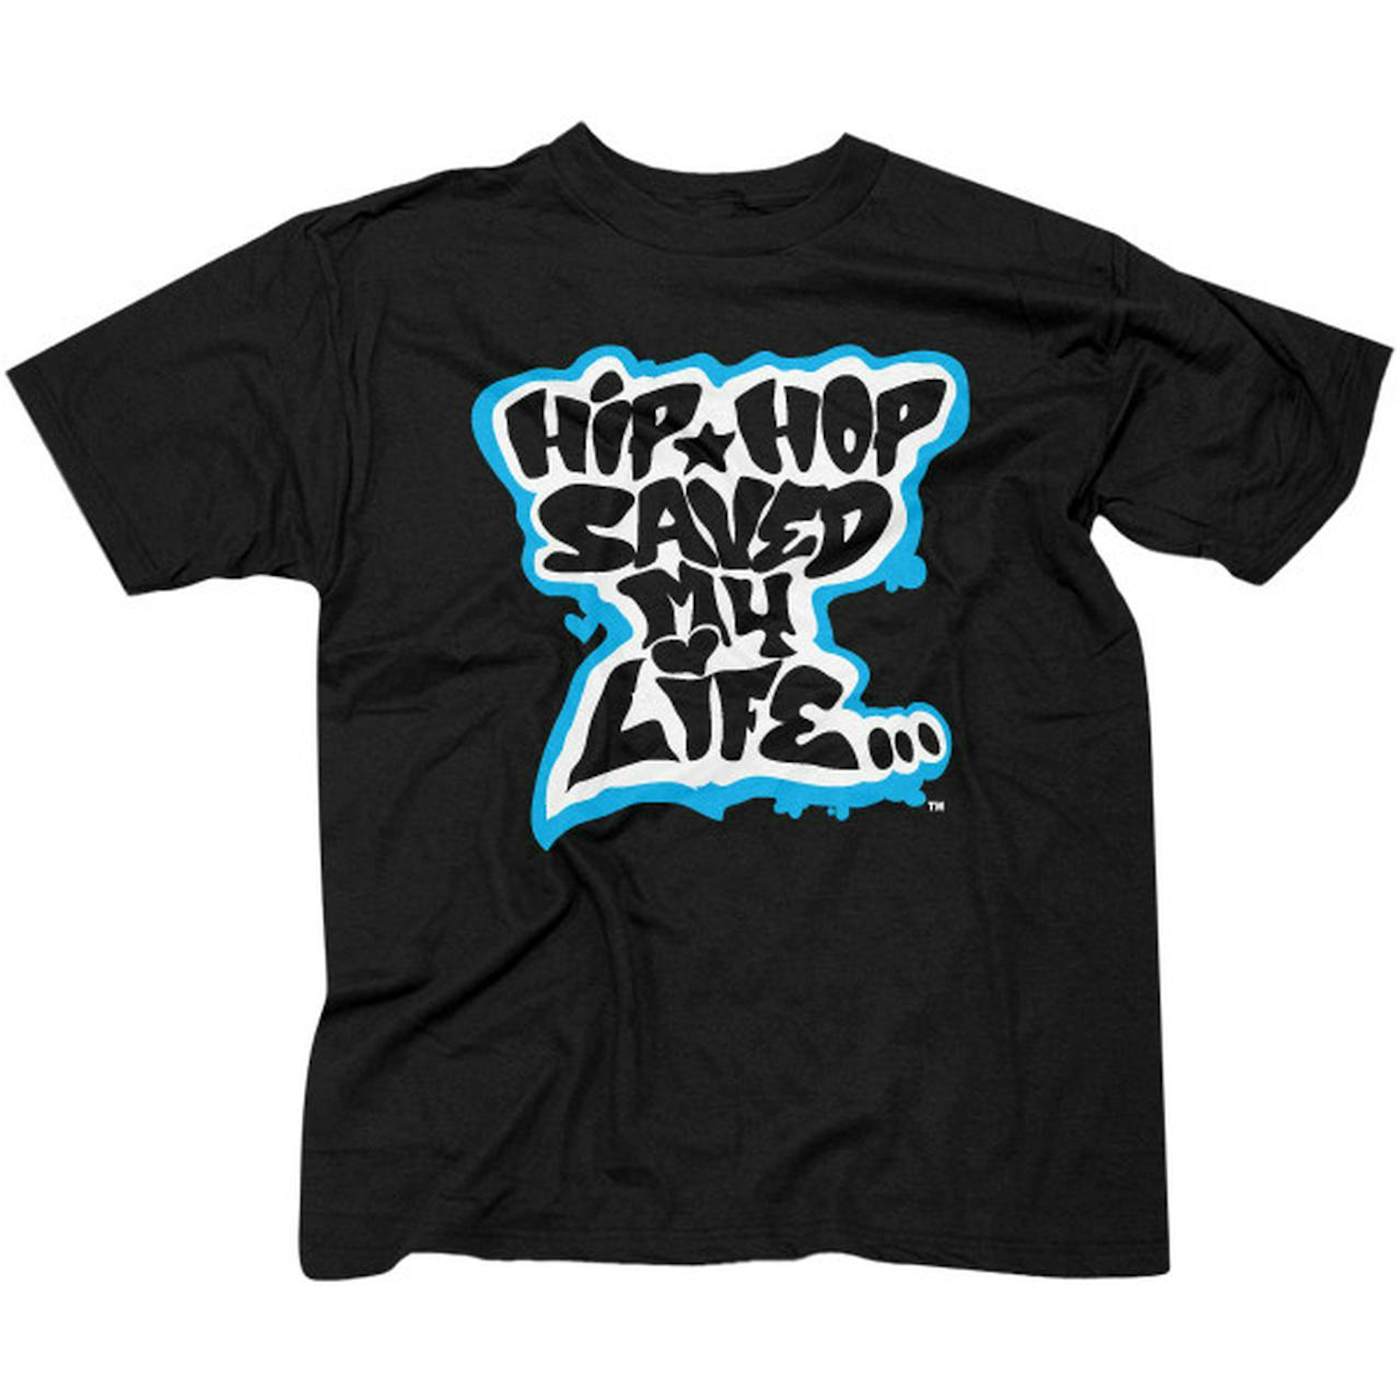 Afrika Bambaataa "Hip Hop Saved My Life" Men's T-shirt